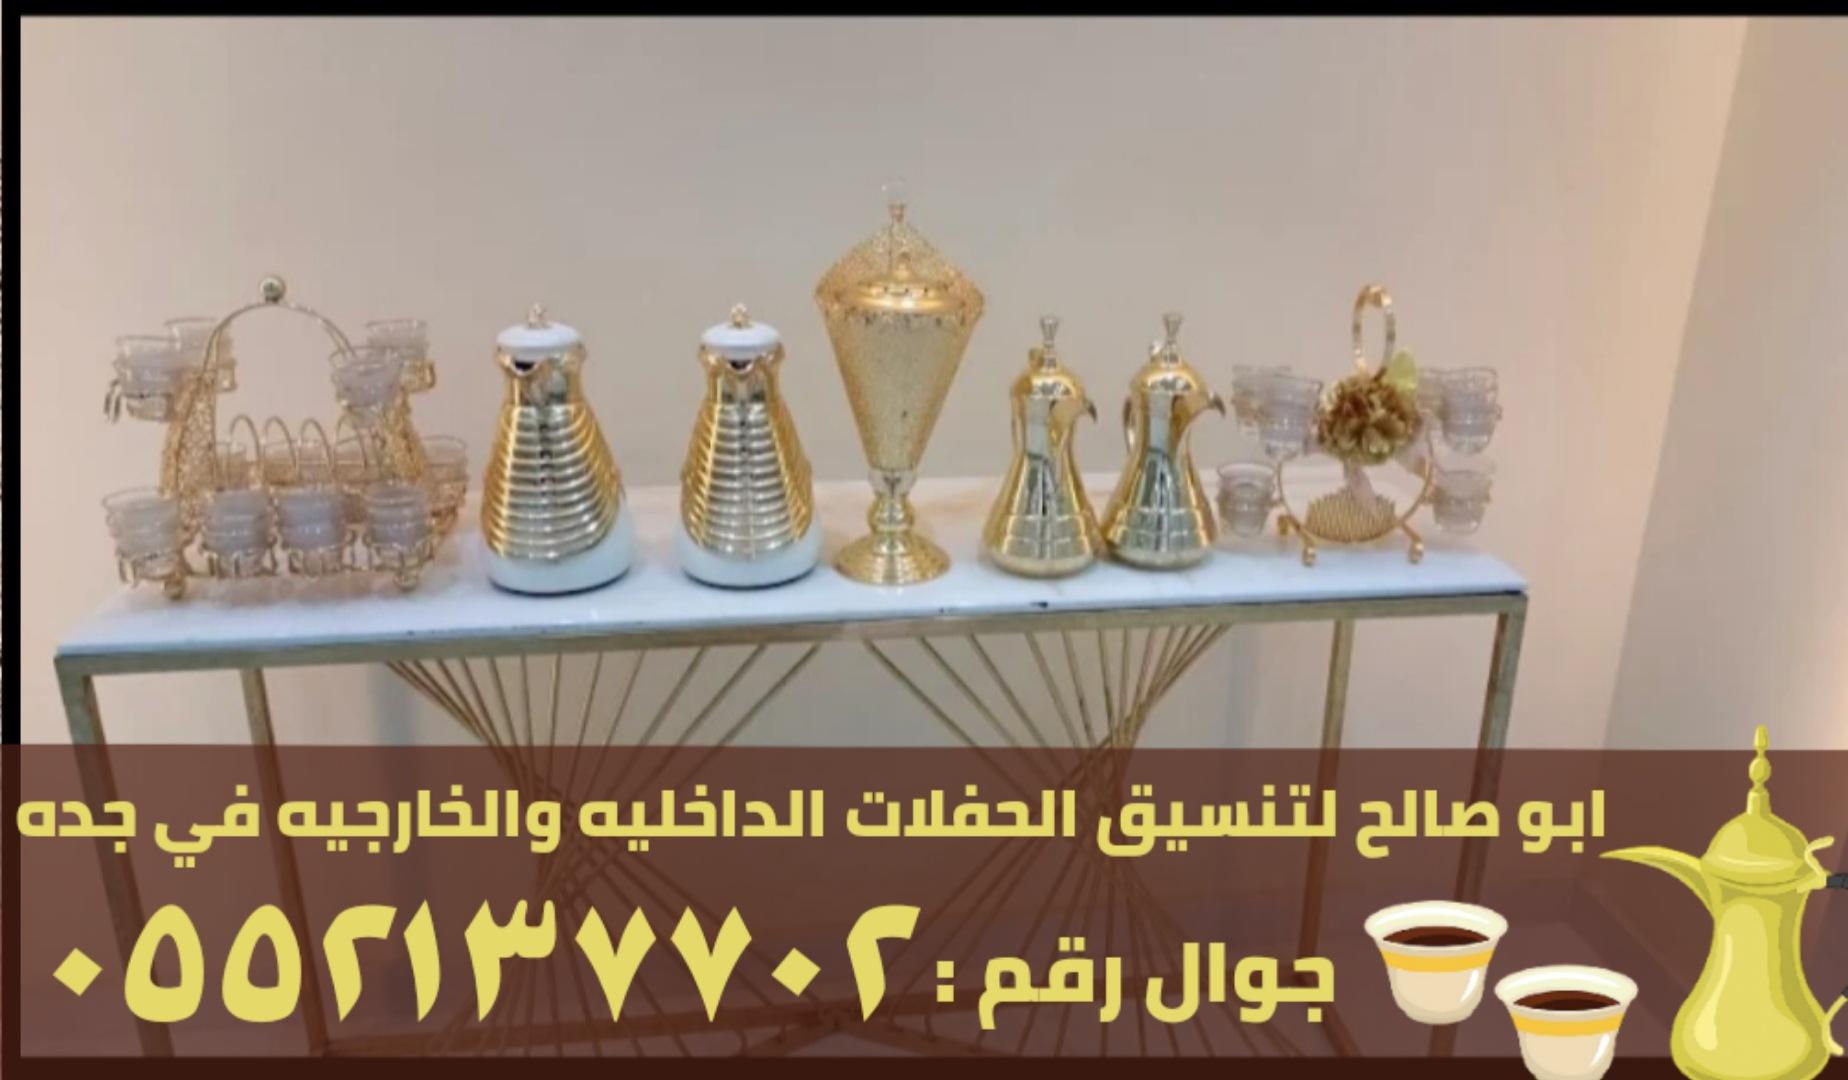 مباشرين قهوه و مباشرات في جدة,0552137702 200818676